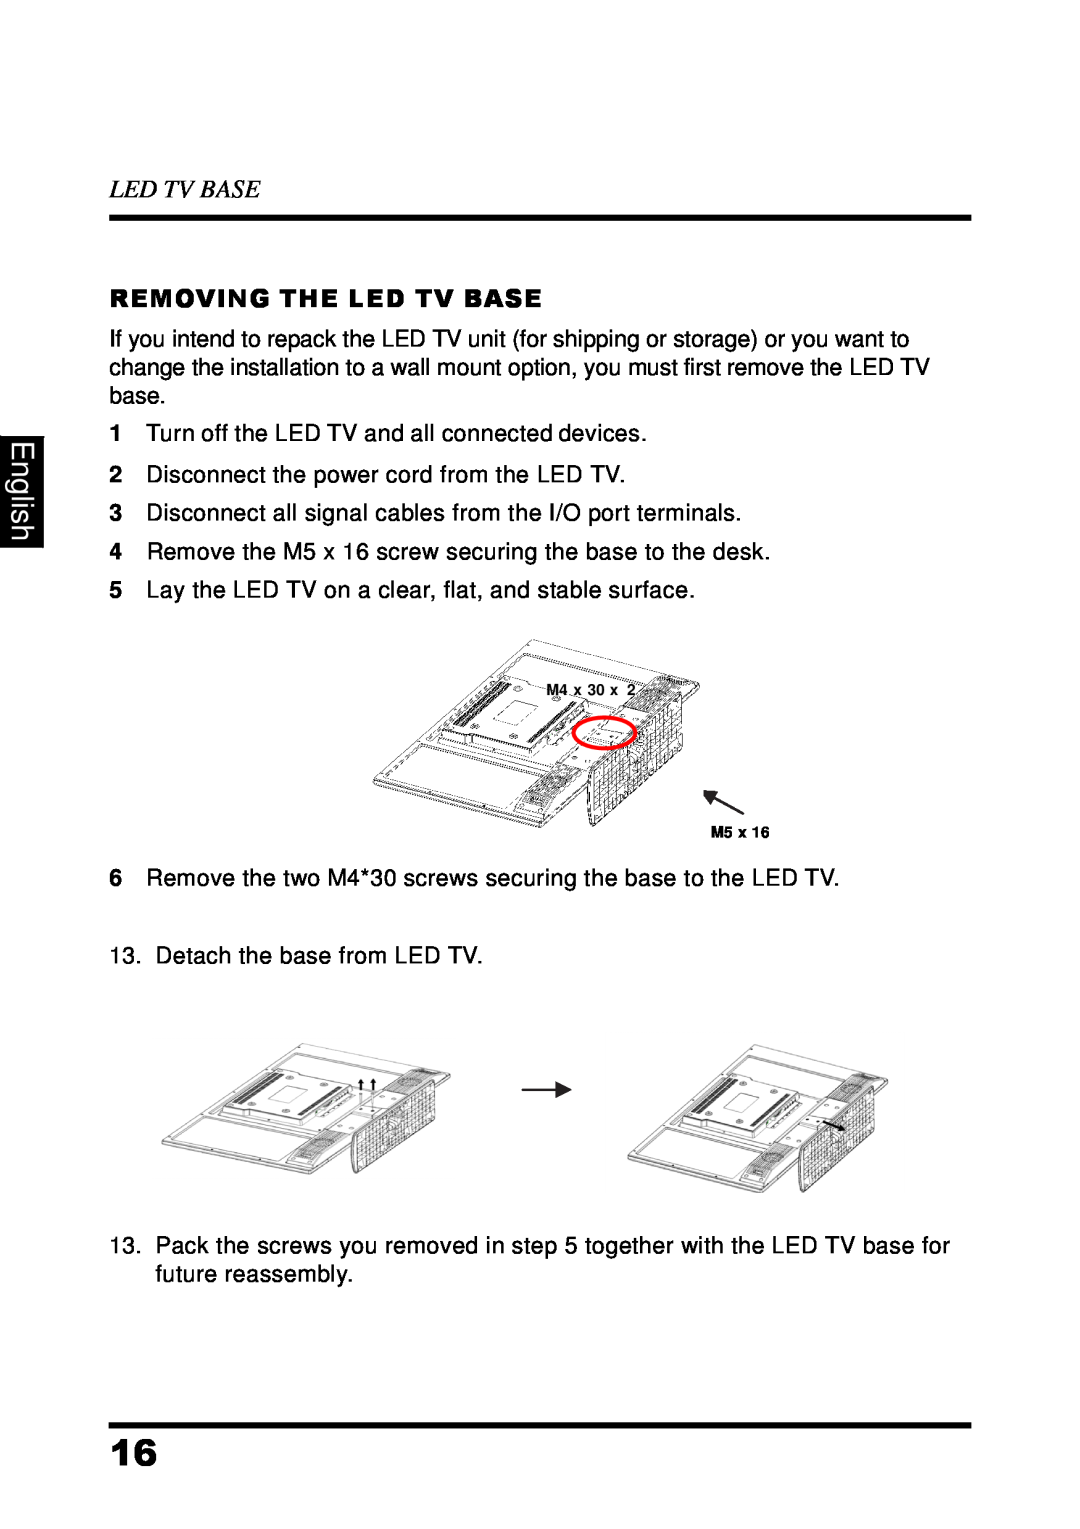 Westinghouse UW48T7HW manual English, Removing The Led Tv Base 